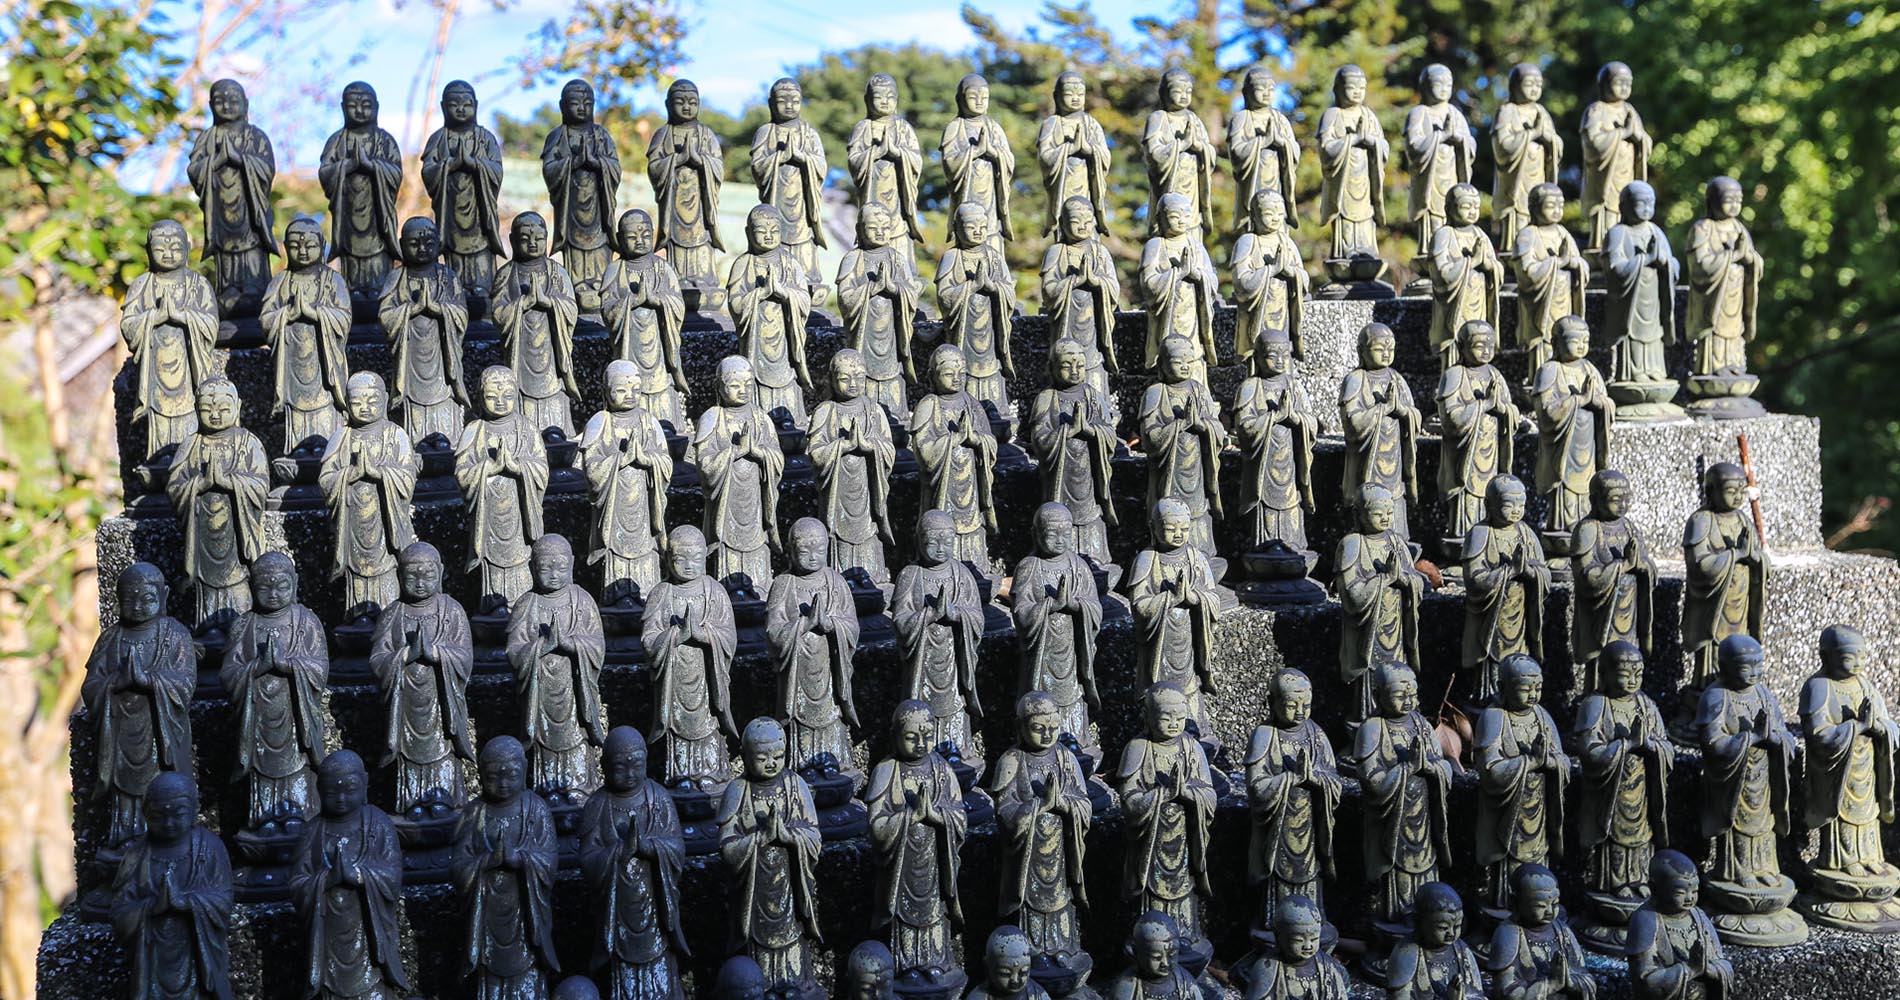 Ensemble de statuettes de Bouddha